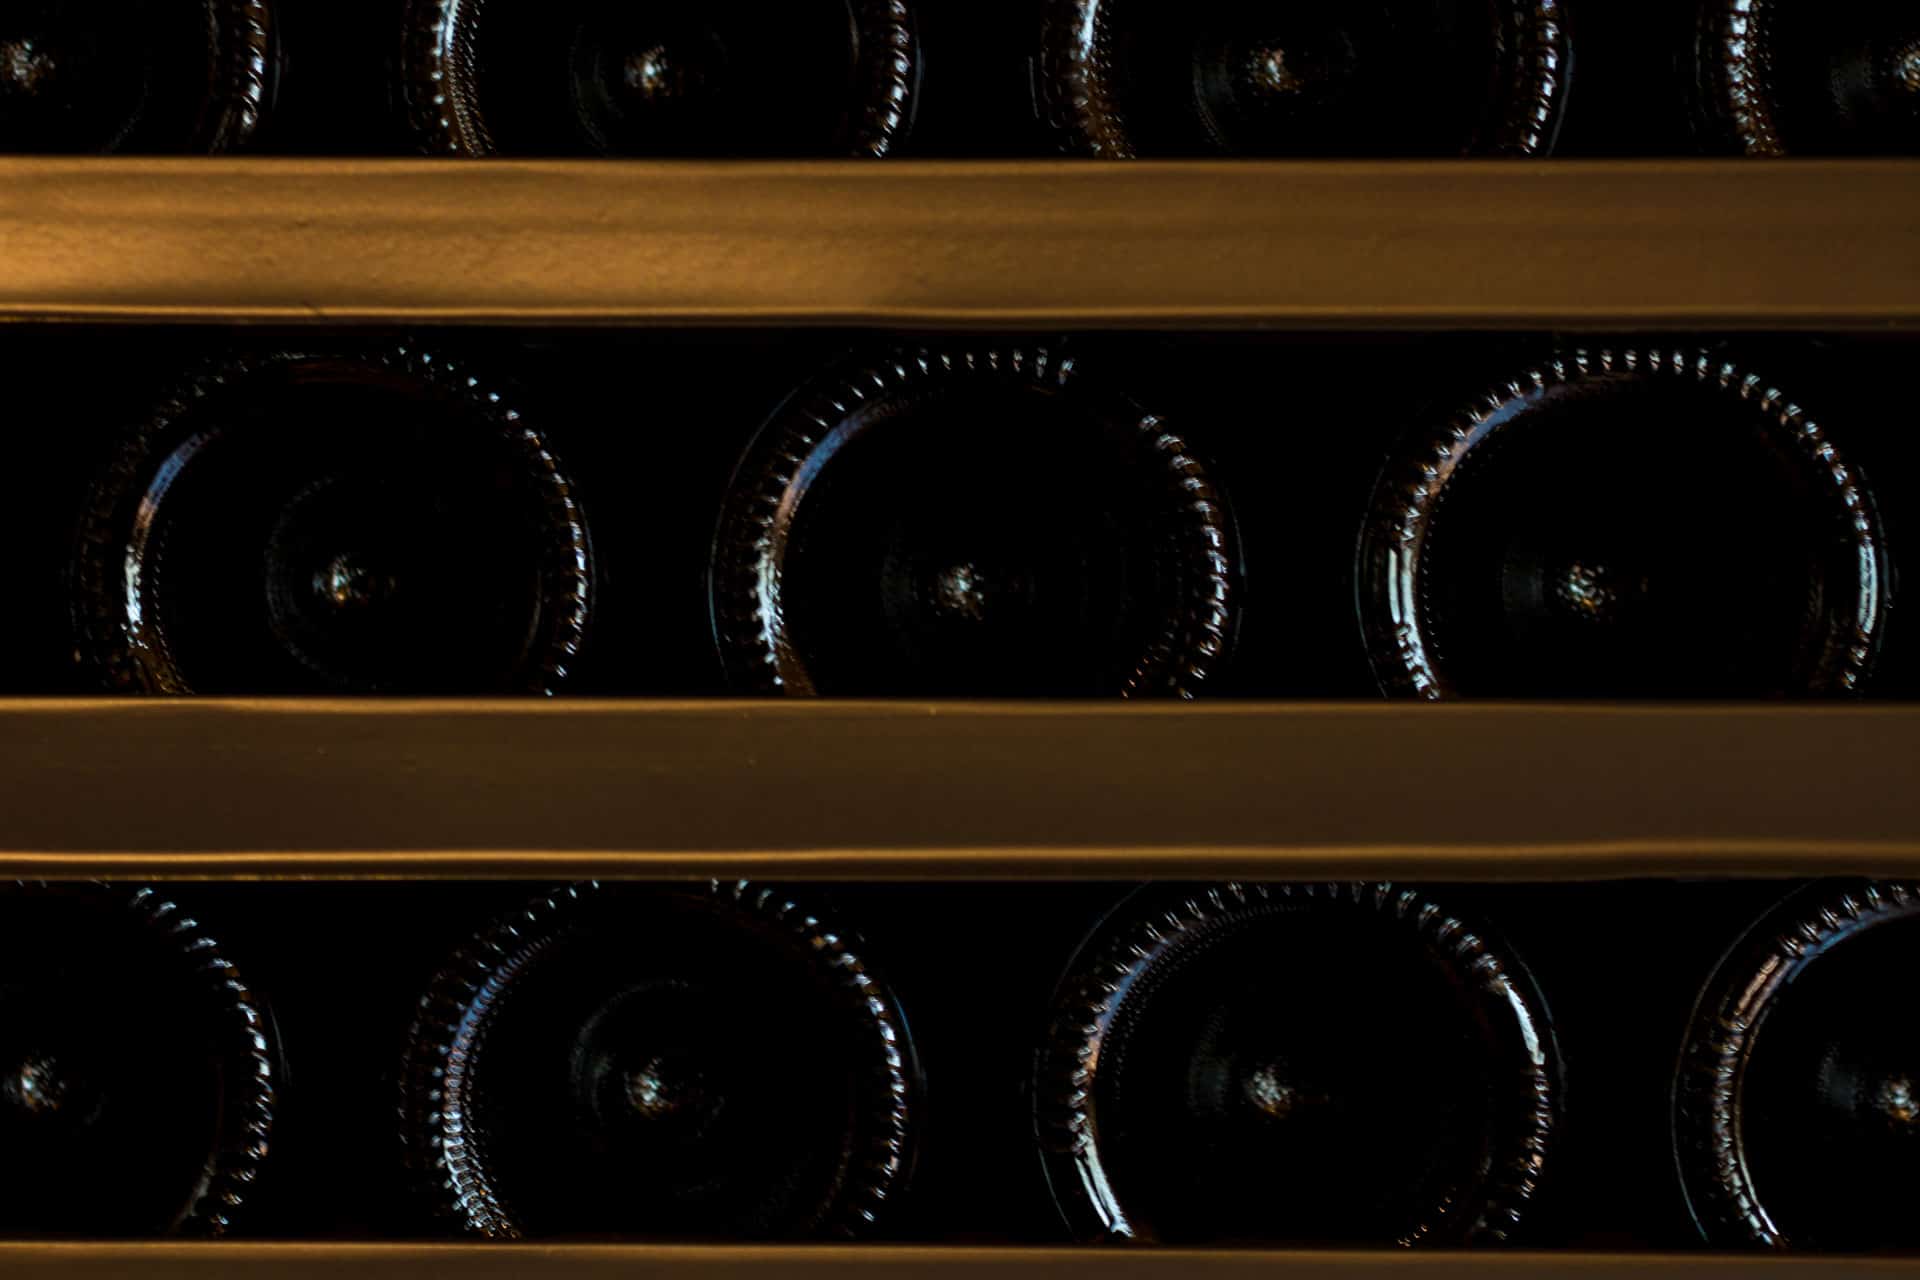 Bottles in the cellar. Piemaggio winery, Chianti Classico, Tuscany.